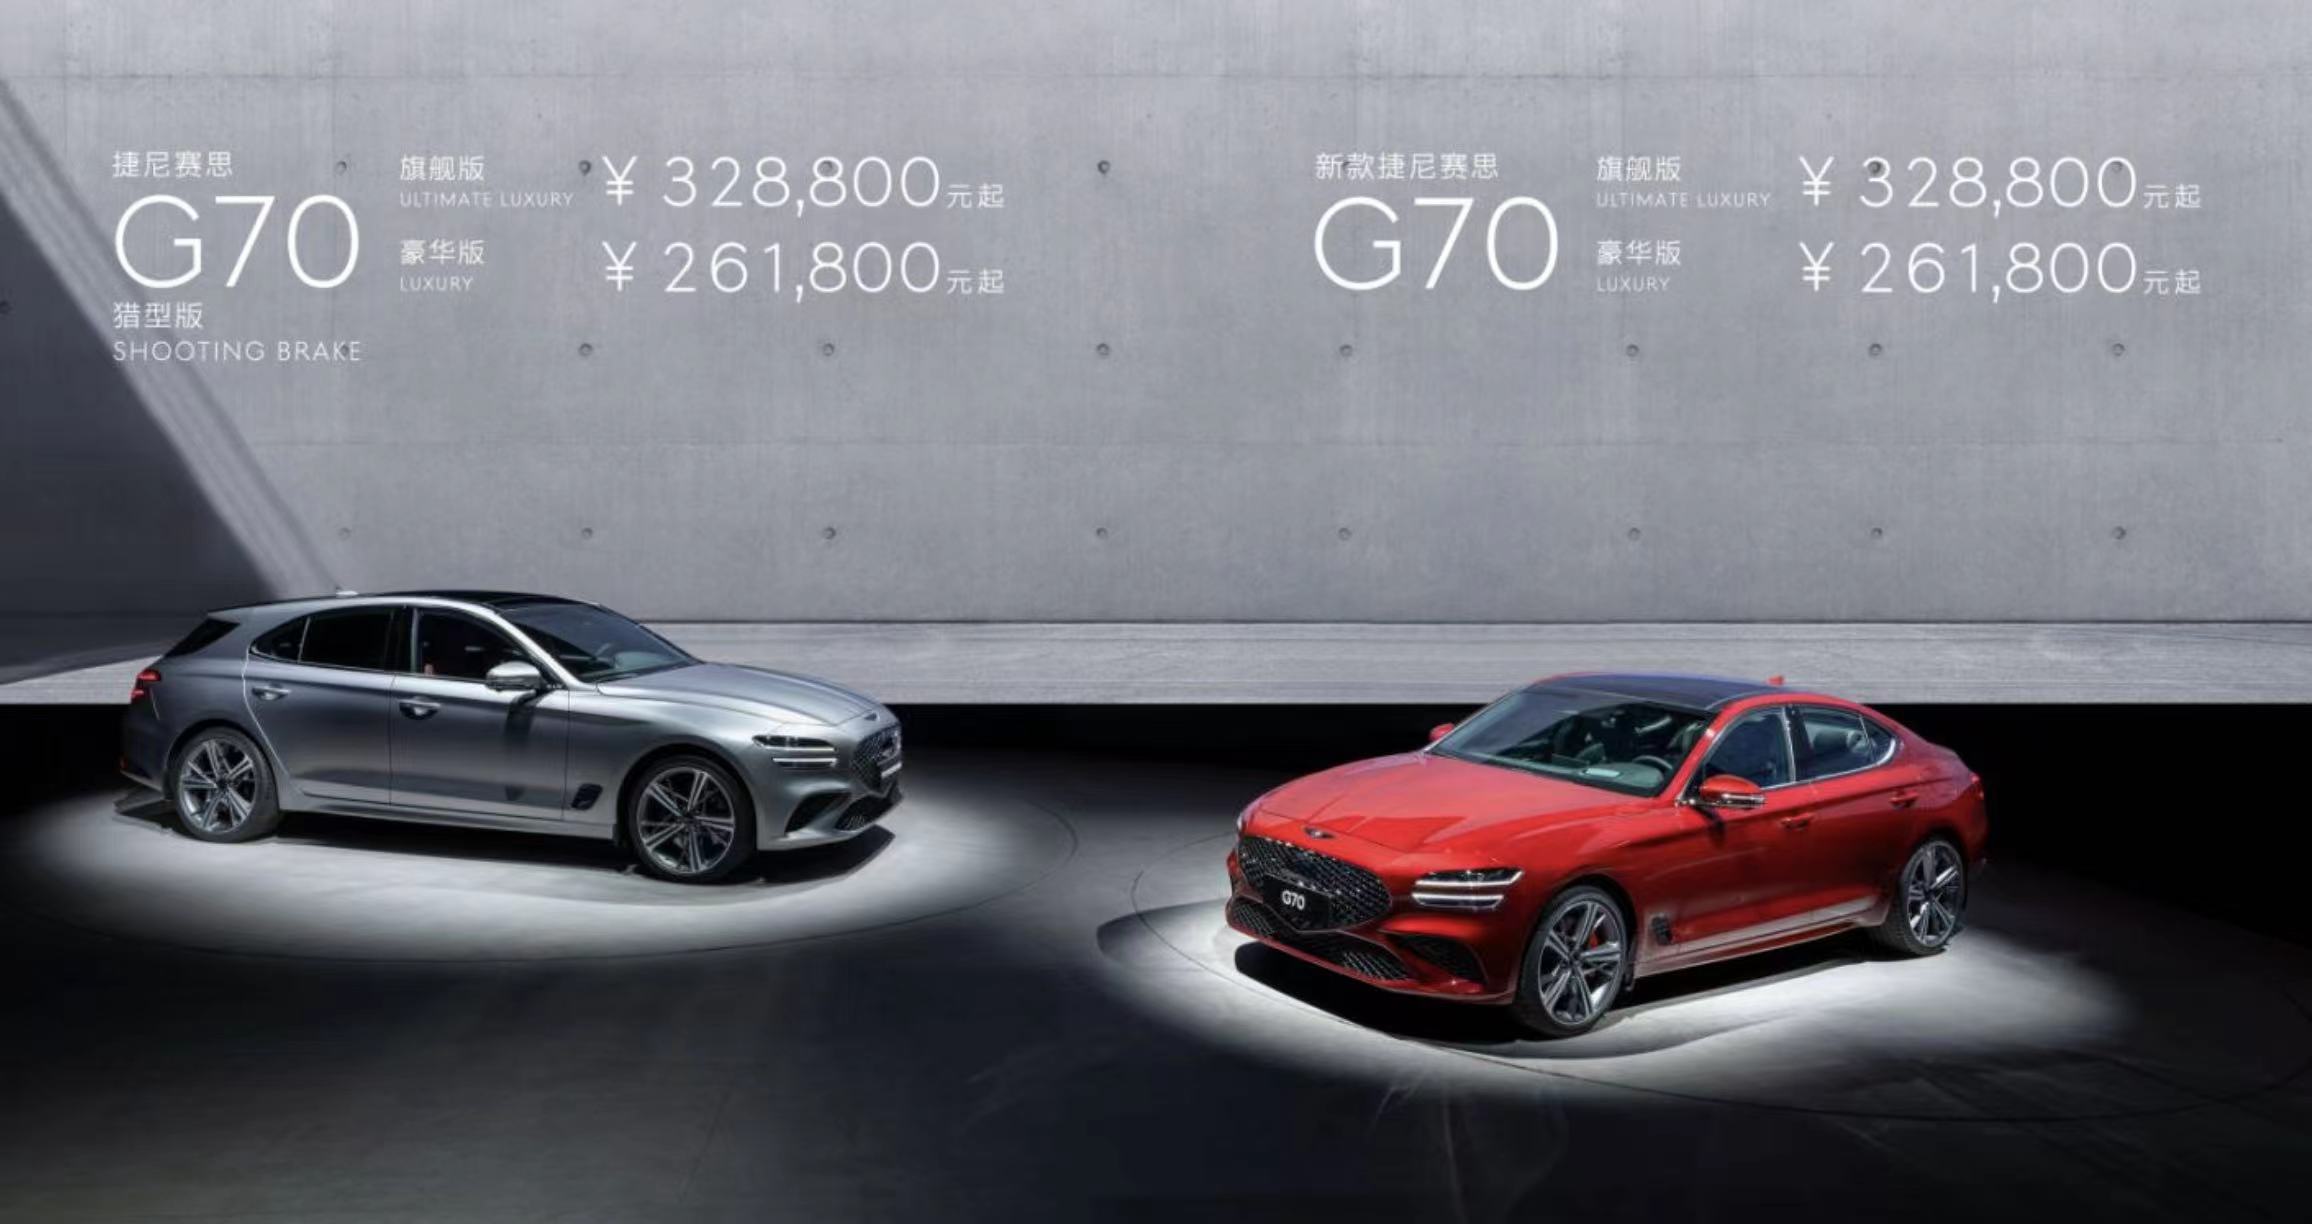 新款捷尼赛思G70和G70猎型版正式上市